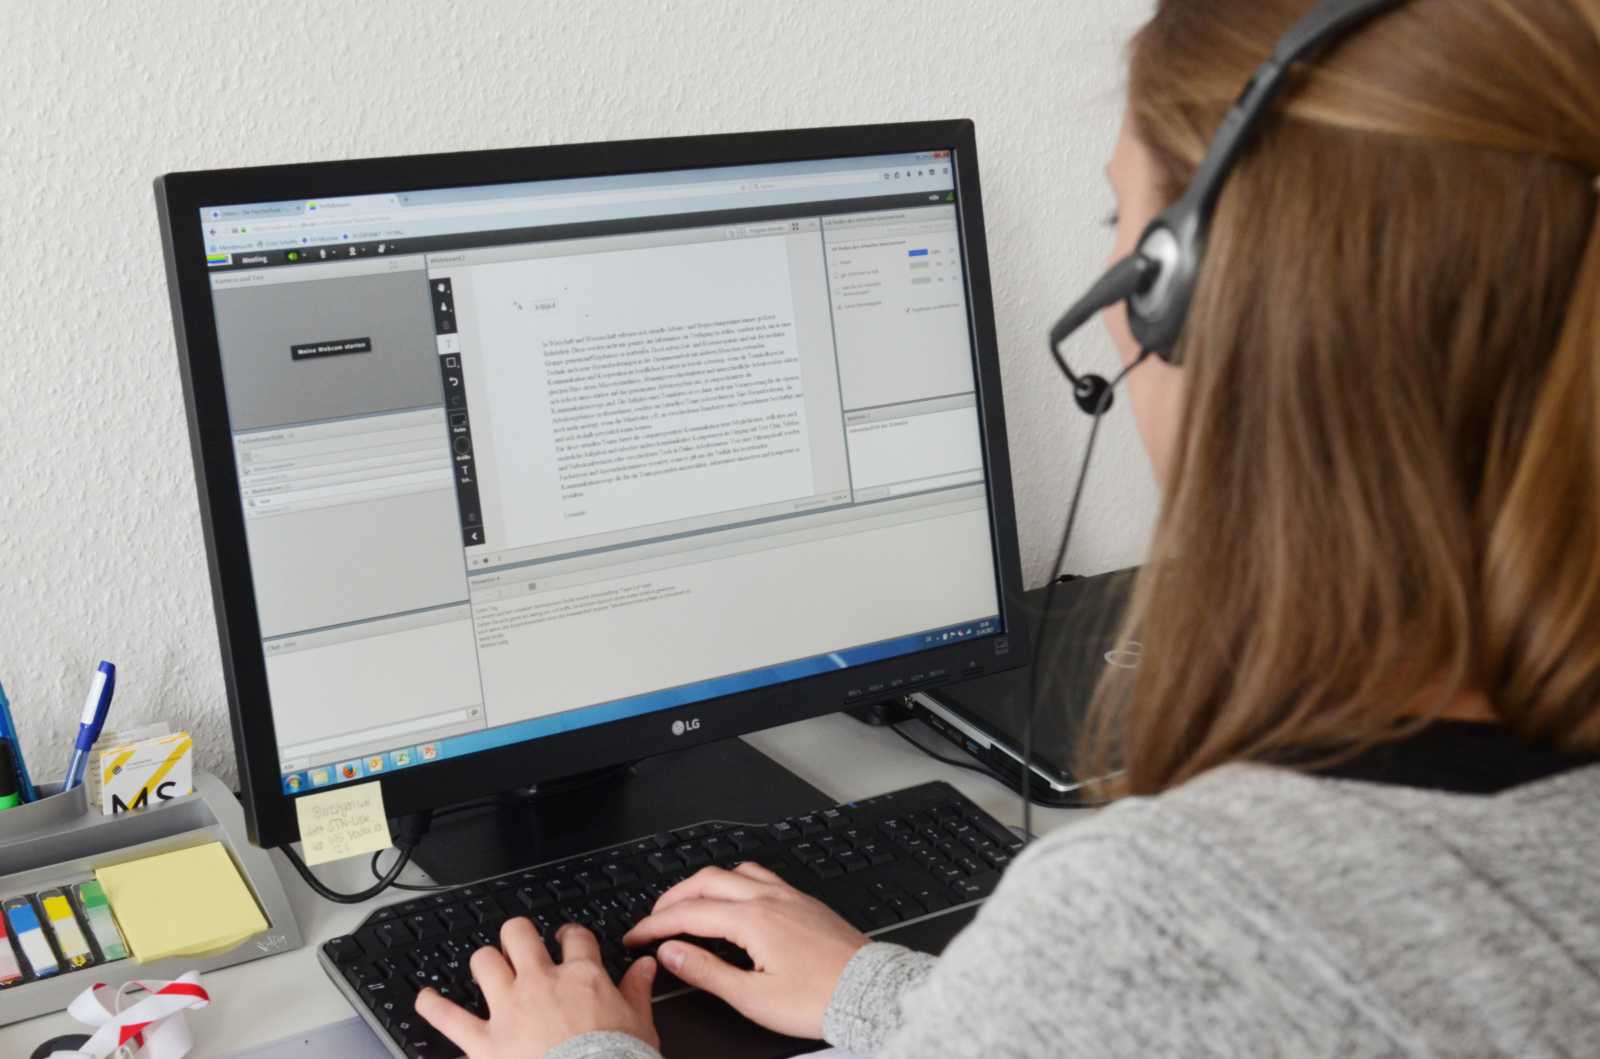 Komplett am PC: Die Teilnehmer der eLearning-Veranstaltung „Virtuelle Teams“ üben sich in computergestützter Kommunikation im virtuellen Raum. (Foto: FH Münster/Pressestelle)